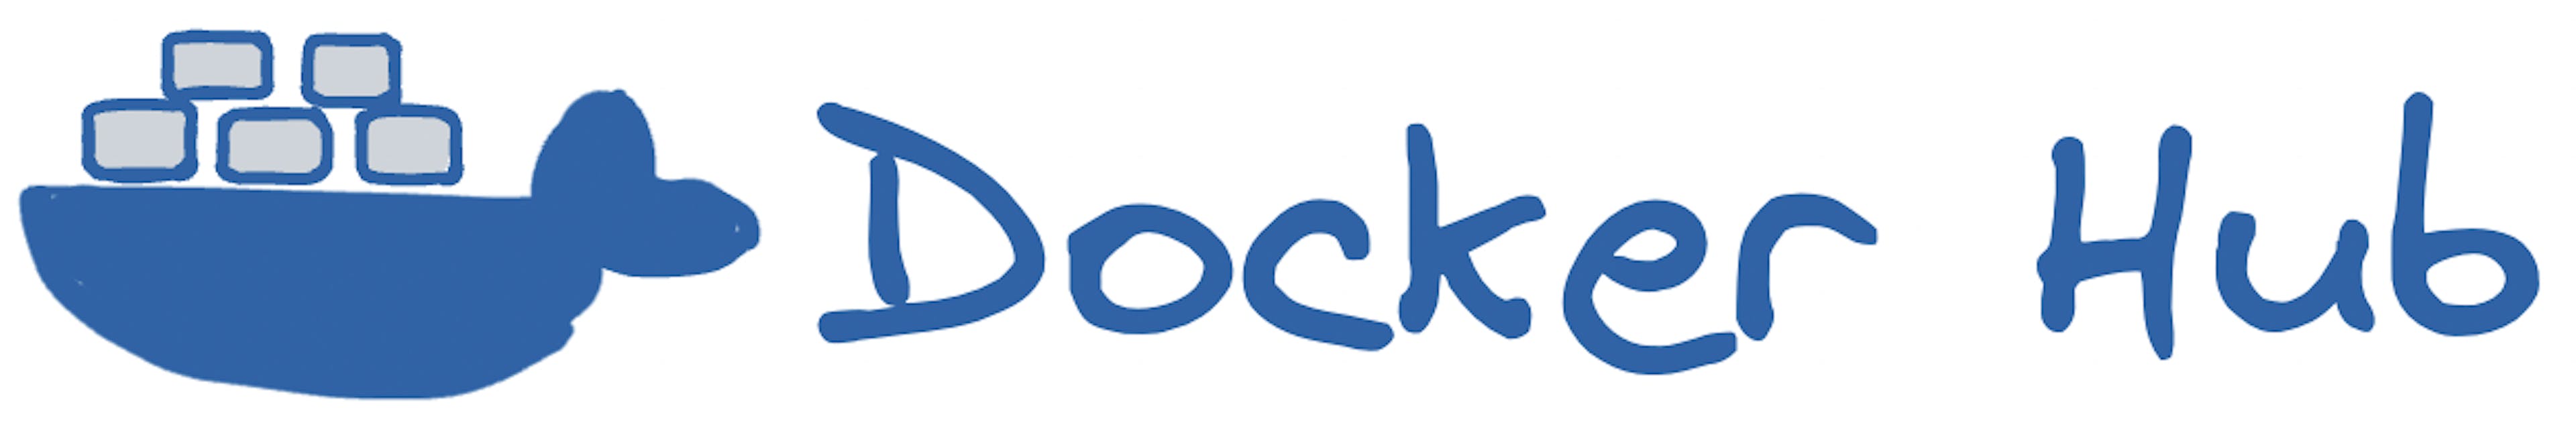 Một tập hợp của logo Docker.